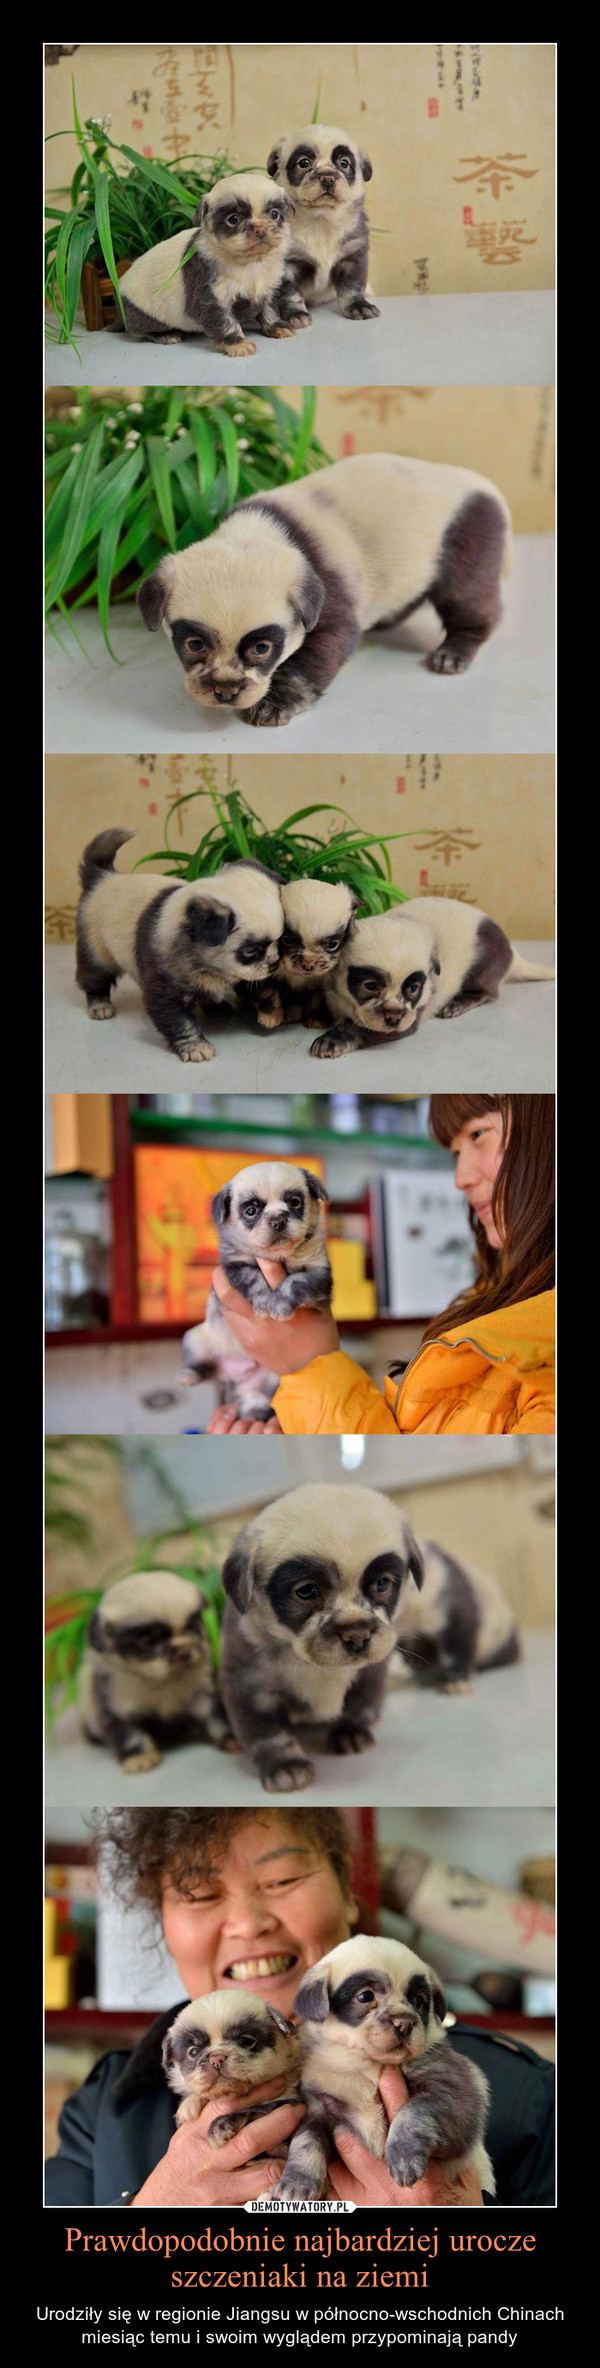 Prawdopodobnie najbardziej urocze szczeniaki na ziemi – Urodziły się w regionie Jiangsu w północno-wschodnich Chinach miesiąc temu i swoim wyglądem przypominają pandy 